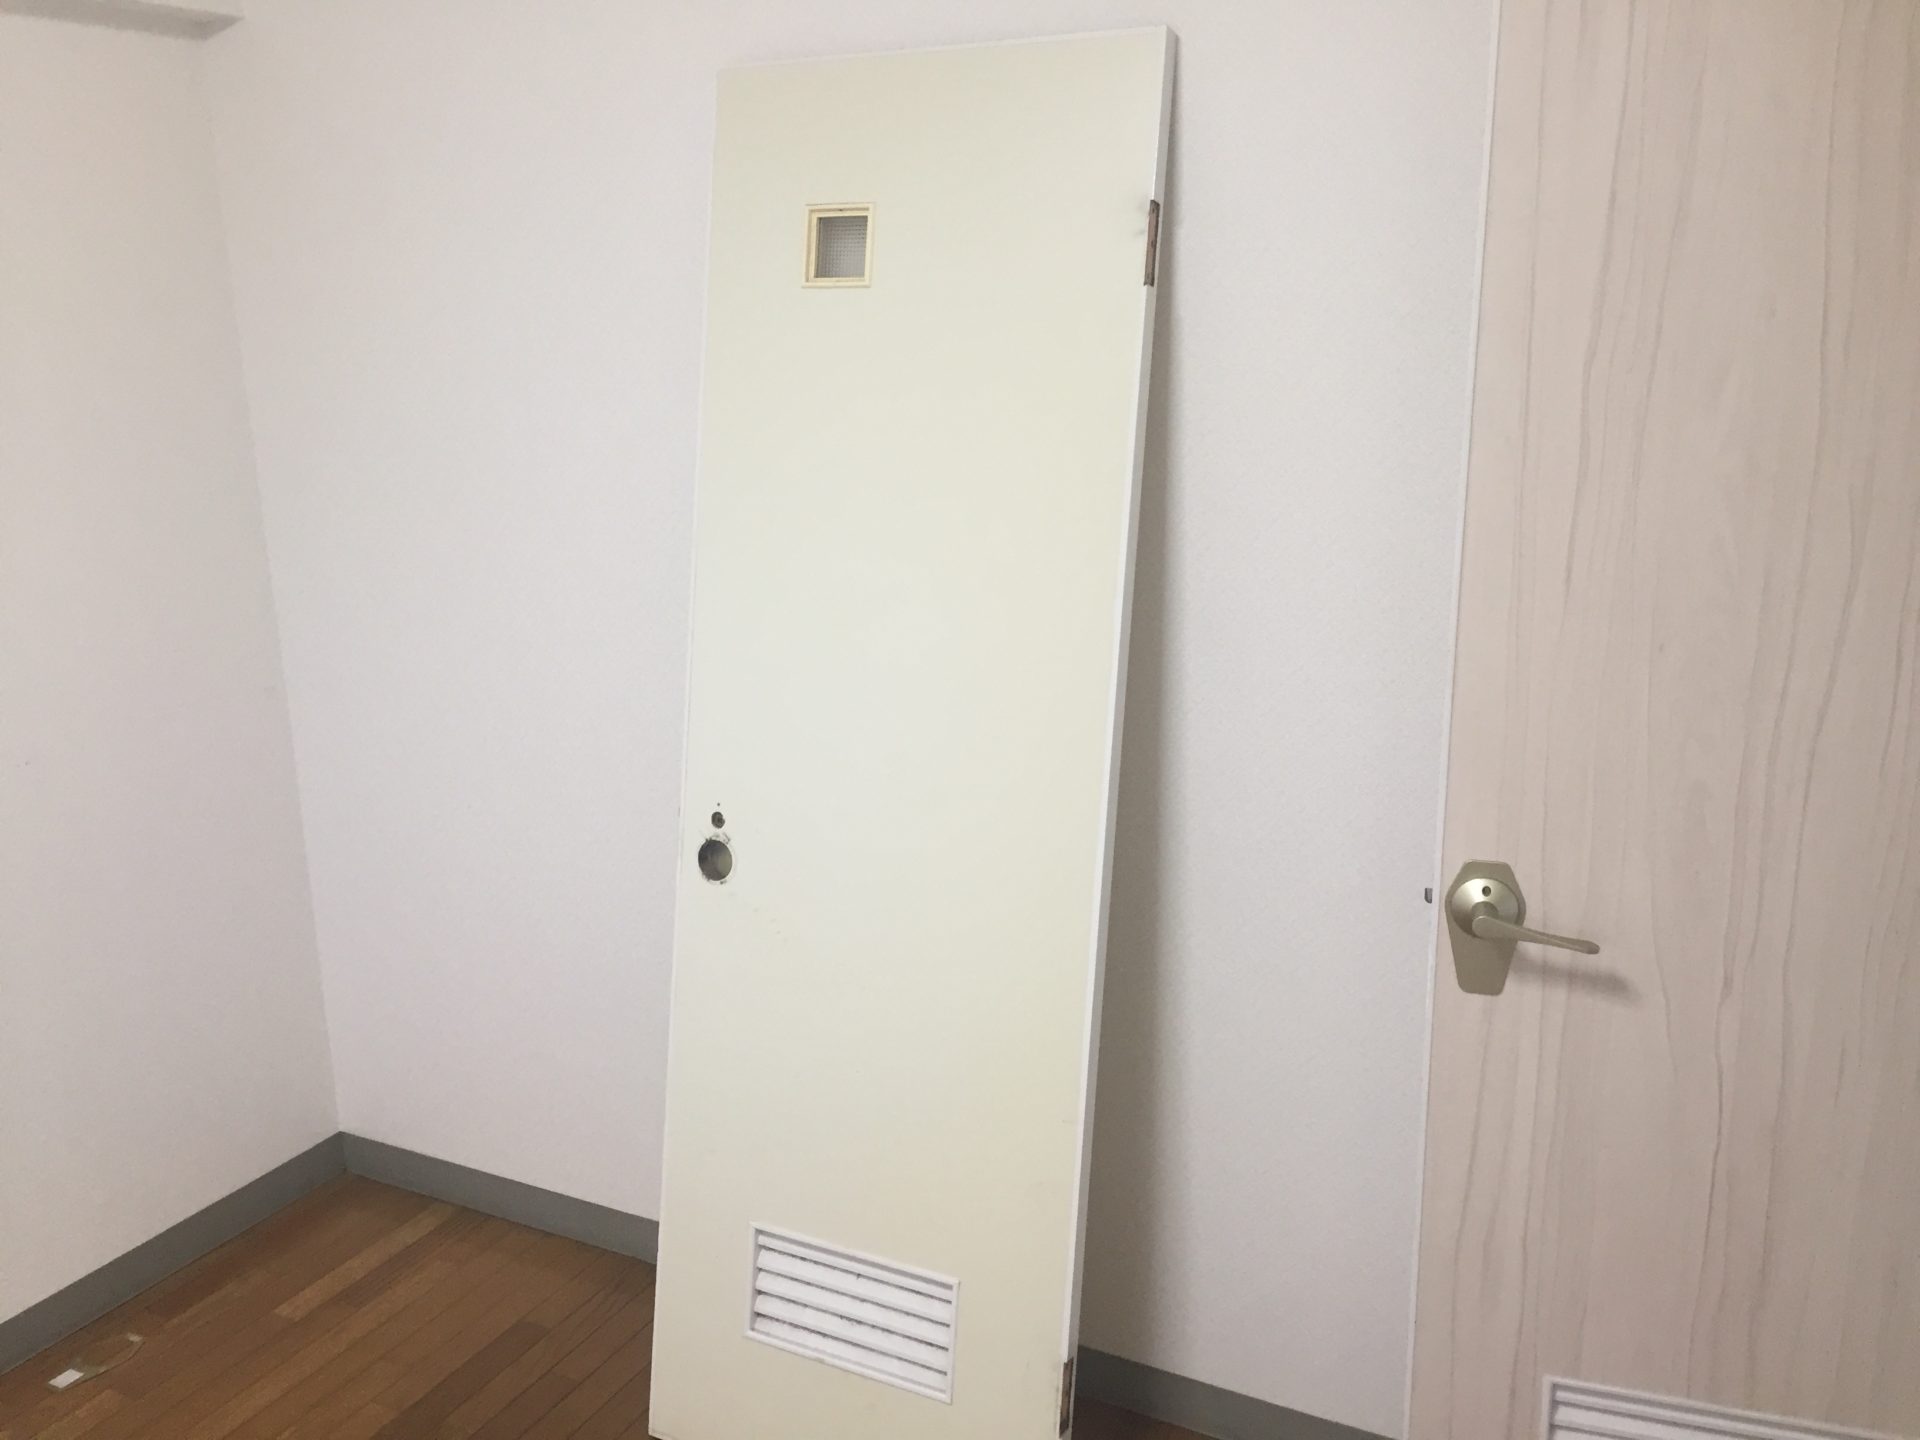 Diy トイレのドアに他のドアと同じ柄のシートを貼りました こちらの部屋の他のドアはすべて明るめの木目柄の壁紙が貼ってありこちらのトイレのドア だけクリーム色一色のドアだったので少し浮いていました これはトイレのドアの素材だけが汚れを防止する目的もありベニア